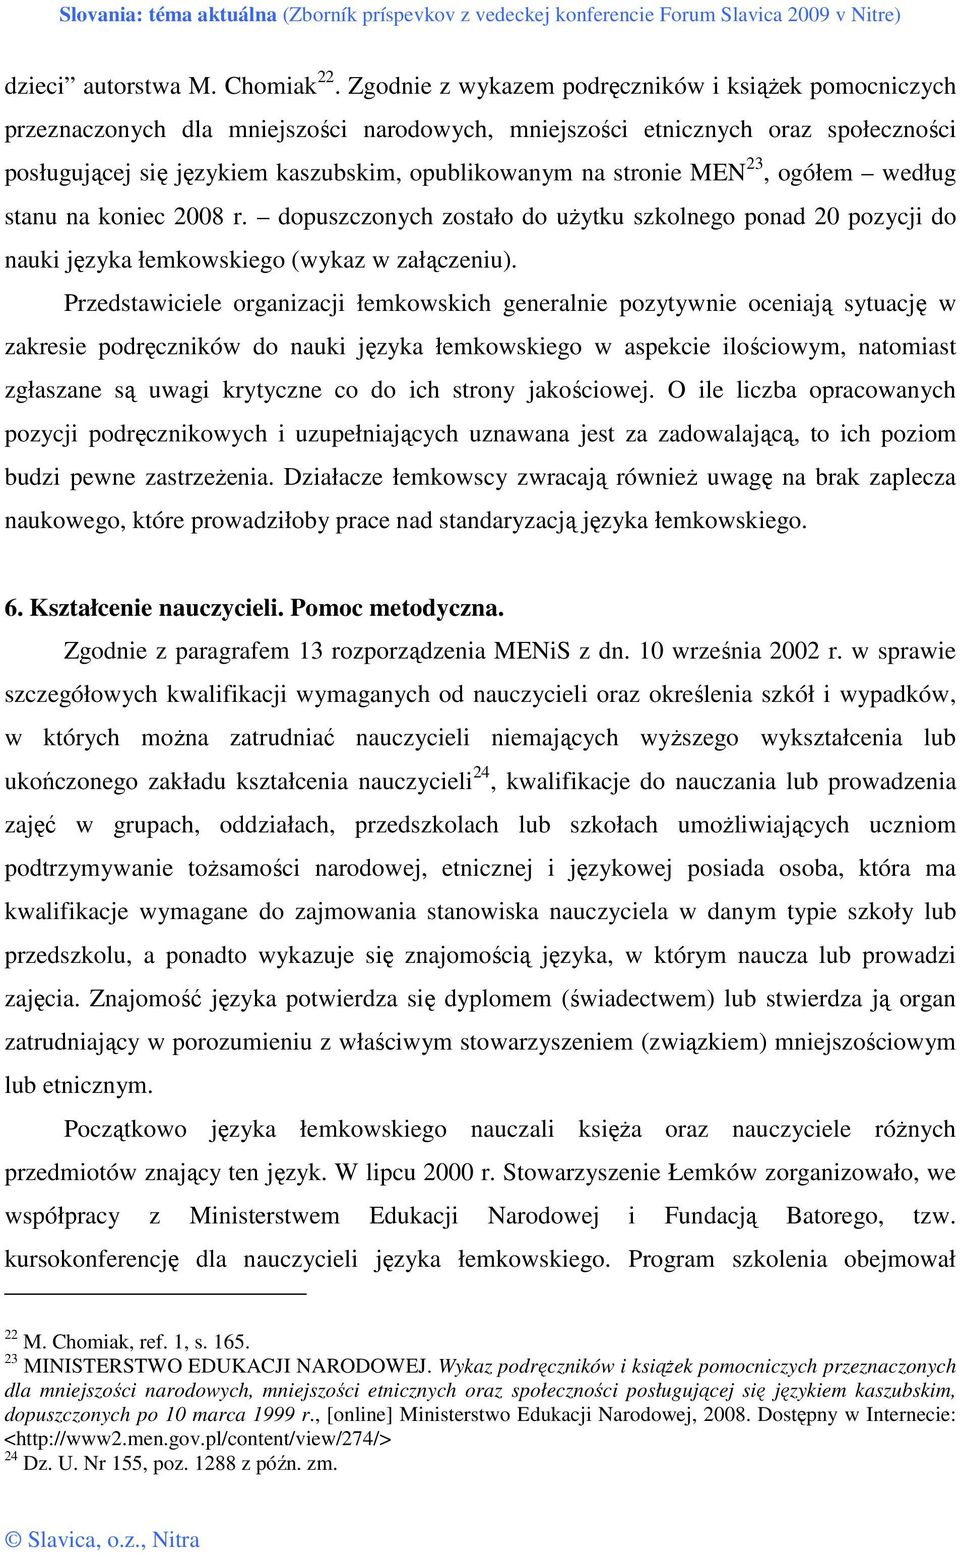 stronie MEN 23, ogółem według stanu na koniec 2008 r. dopuszczonych zostało do uŝytku szkolnego ponad 20 pozycji do nauki języka łemkowskiego (wykaz w załączeniu).